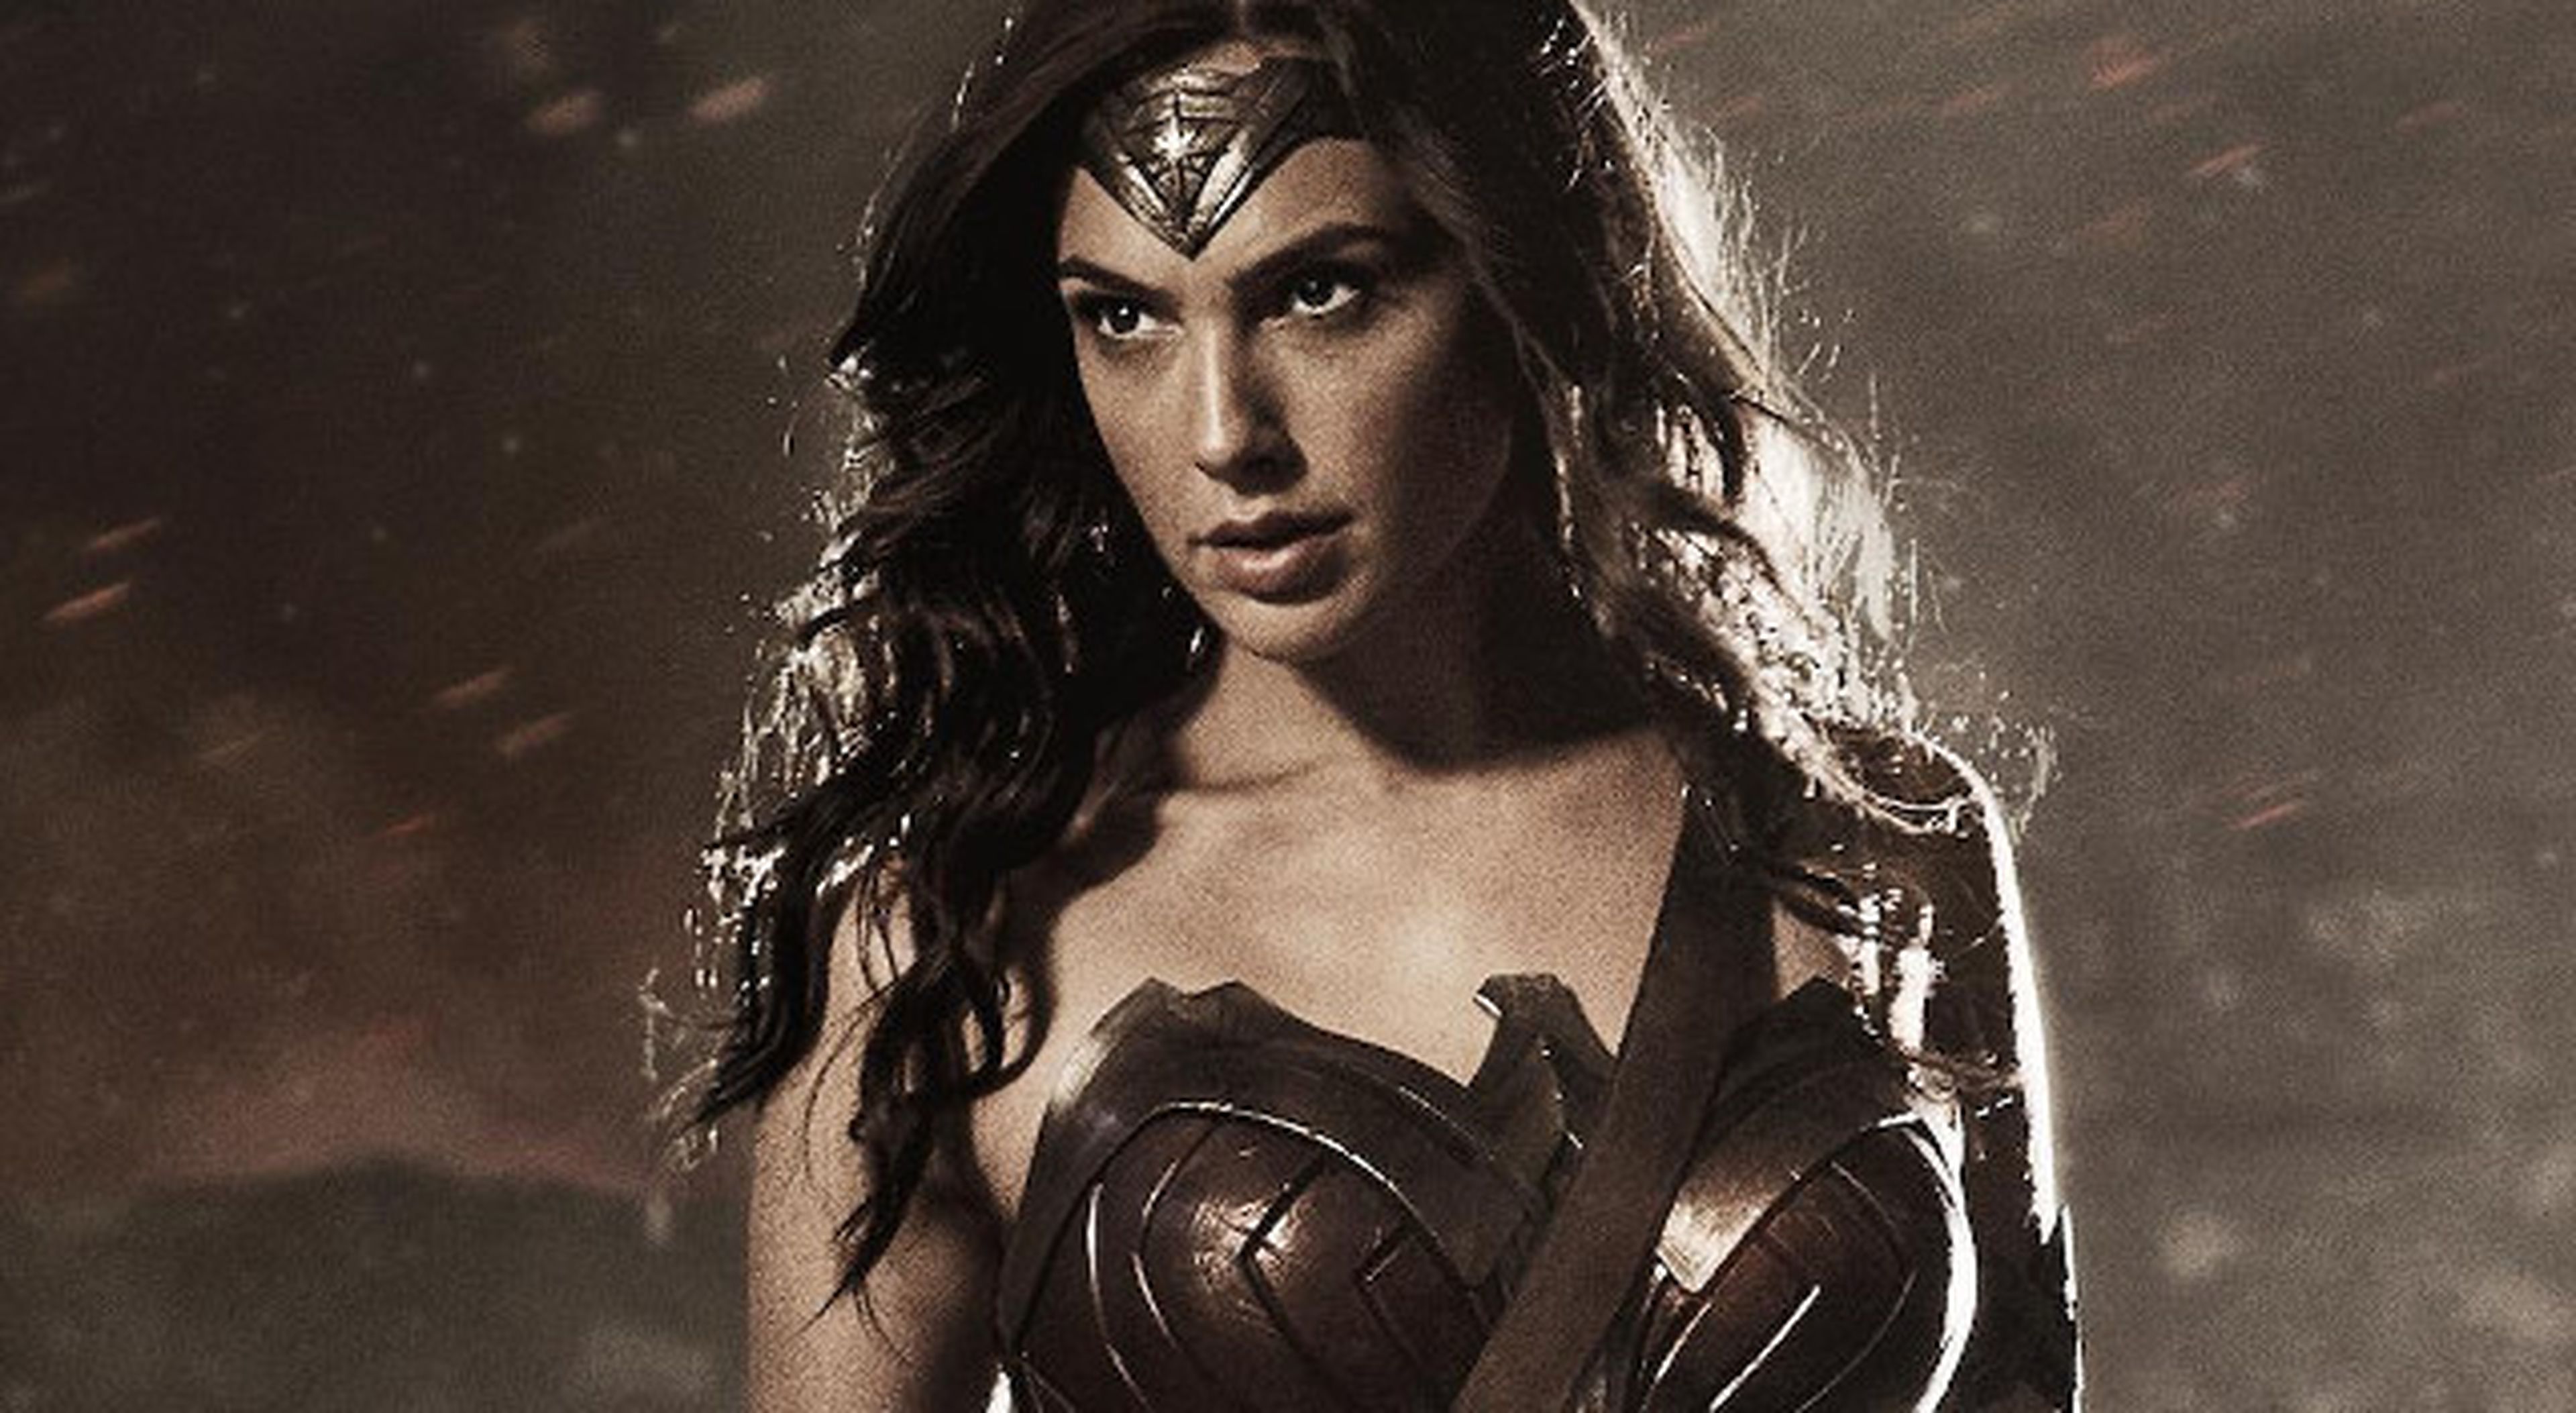 Primera imagen de Gal Gadot como Wonder Woman en Batman V Superman